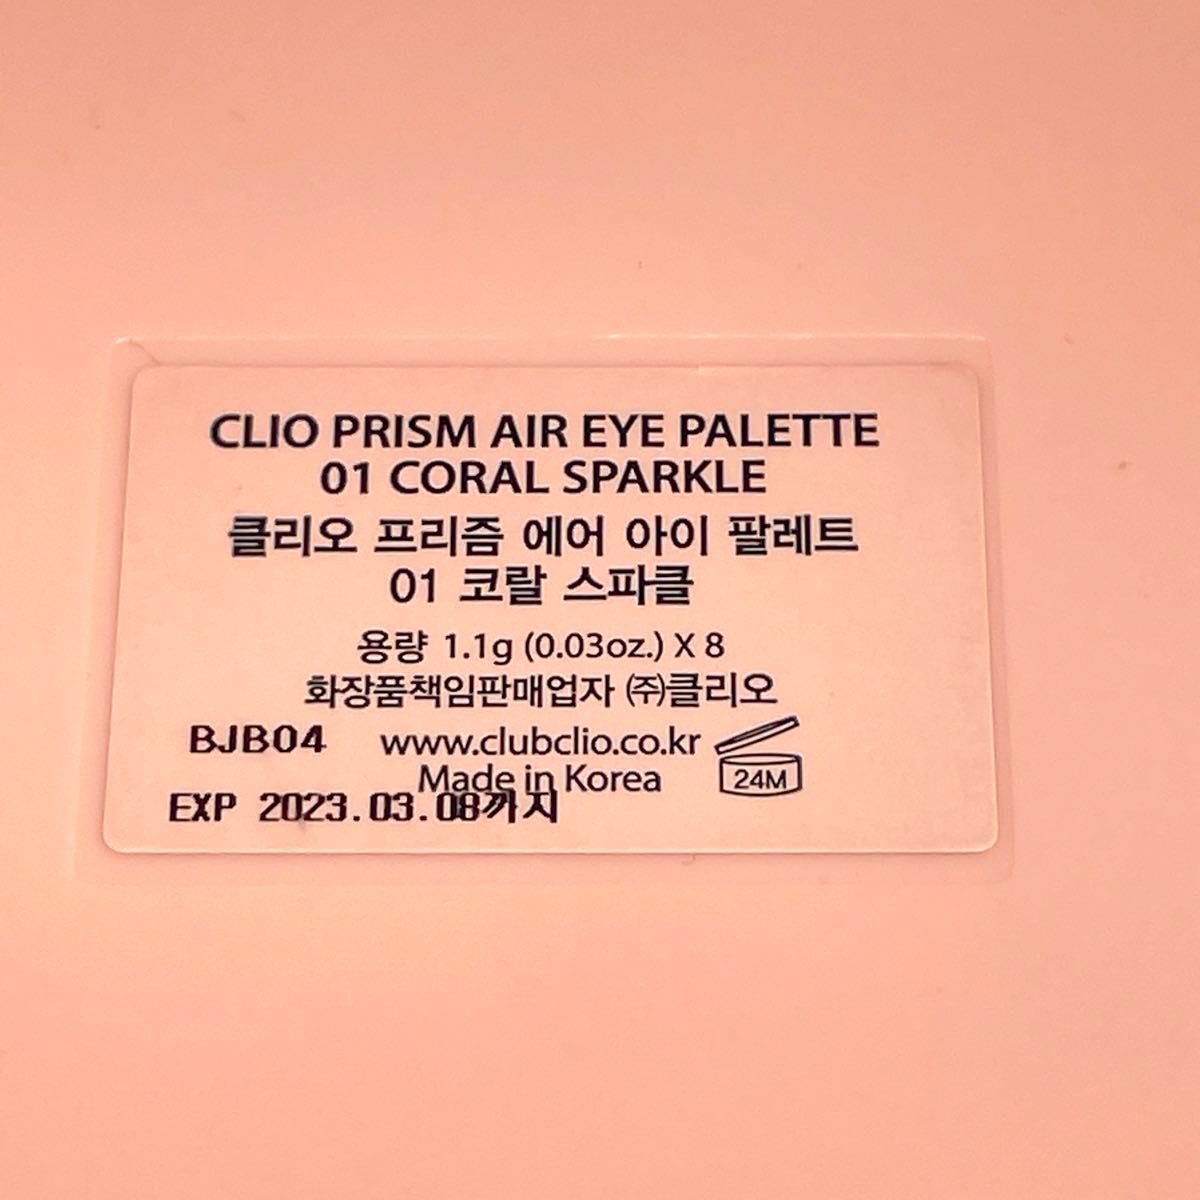 韓国 CLIO アイシャドウ パレット 8色 コーラルピンク ブラウン プリズム エアー アイパレット 01 ラメ マット